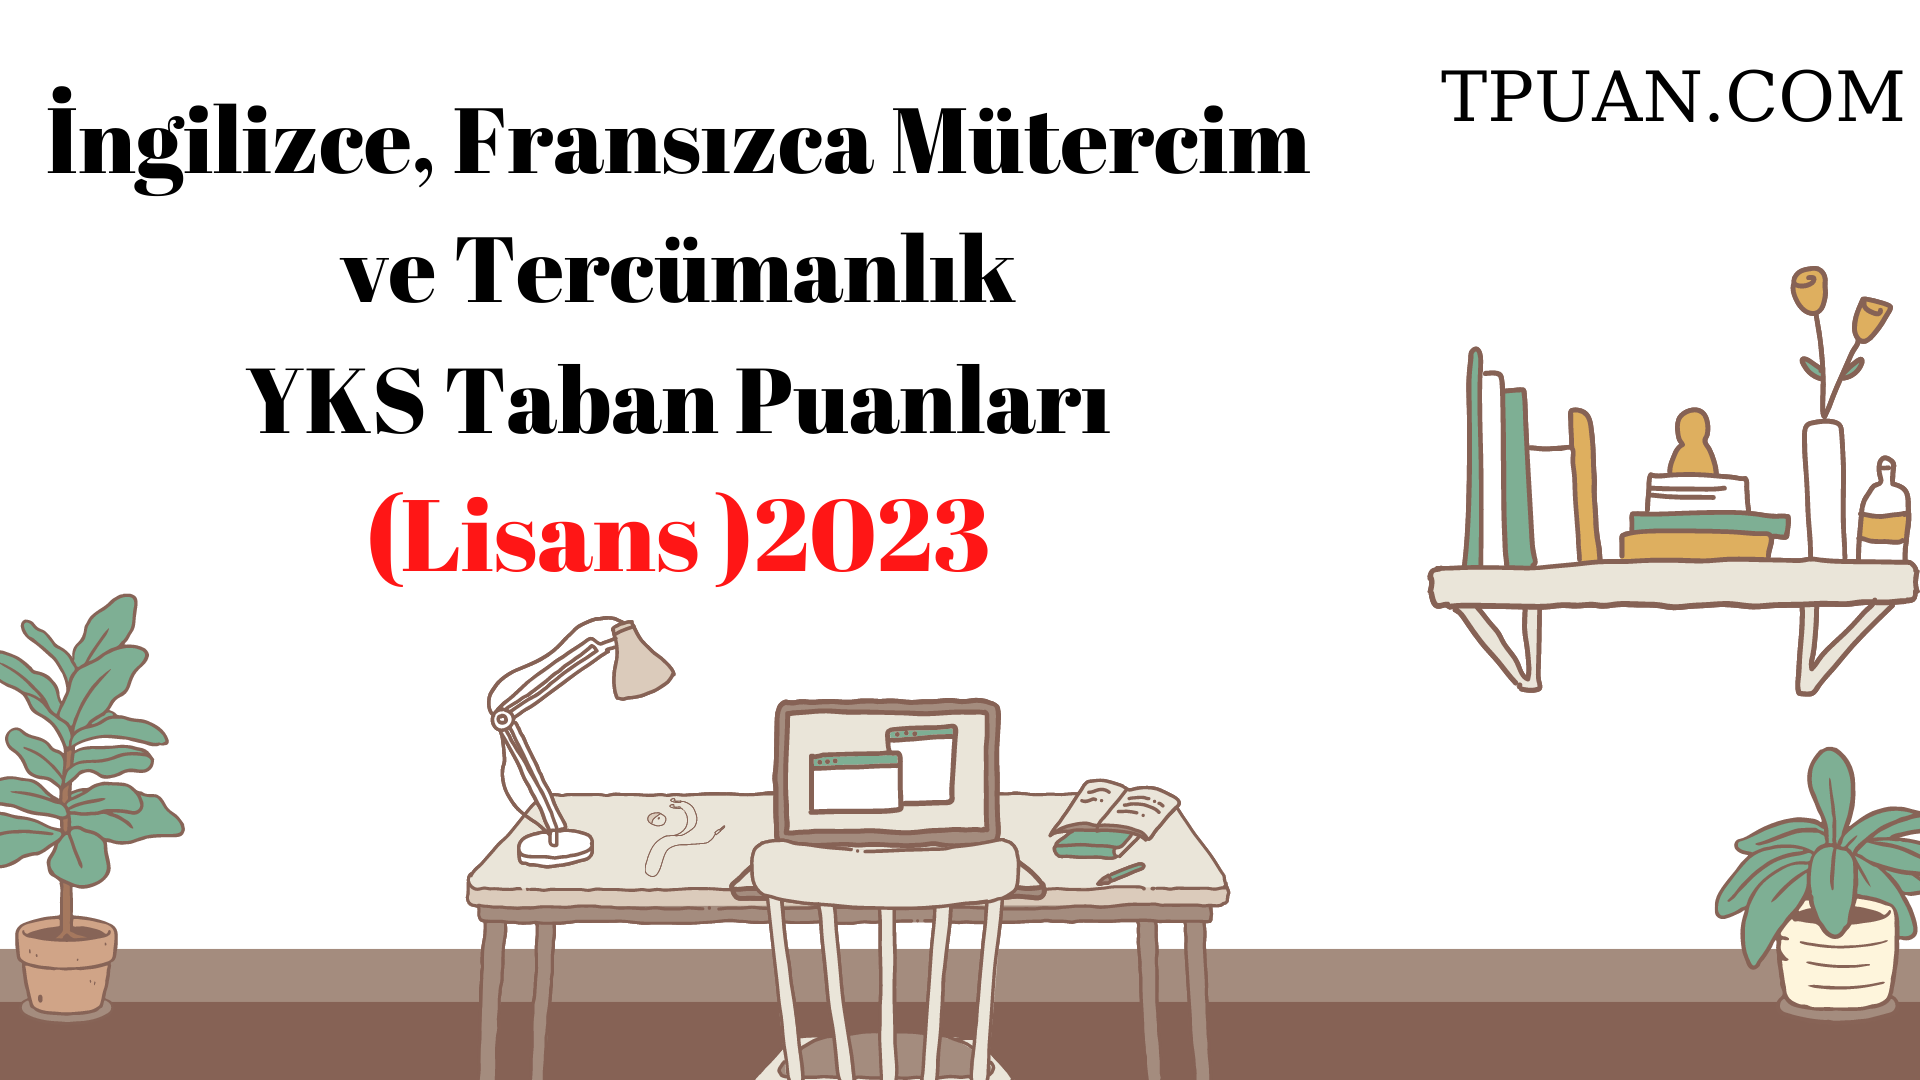  İngilizce, Fransızca Mütercim ve Tercümanlık Bölümü YKS Taban Puanları (4 Yıllık) 2023